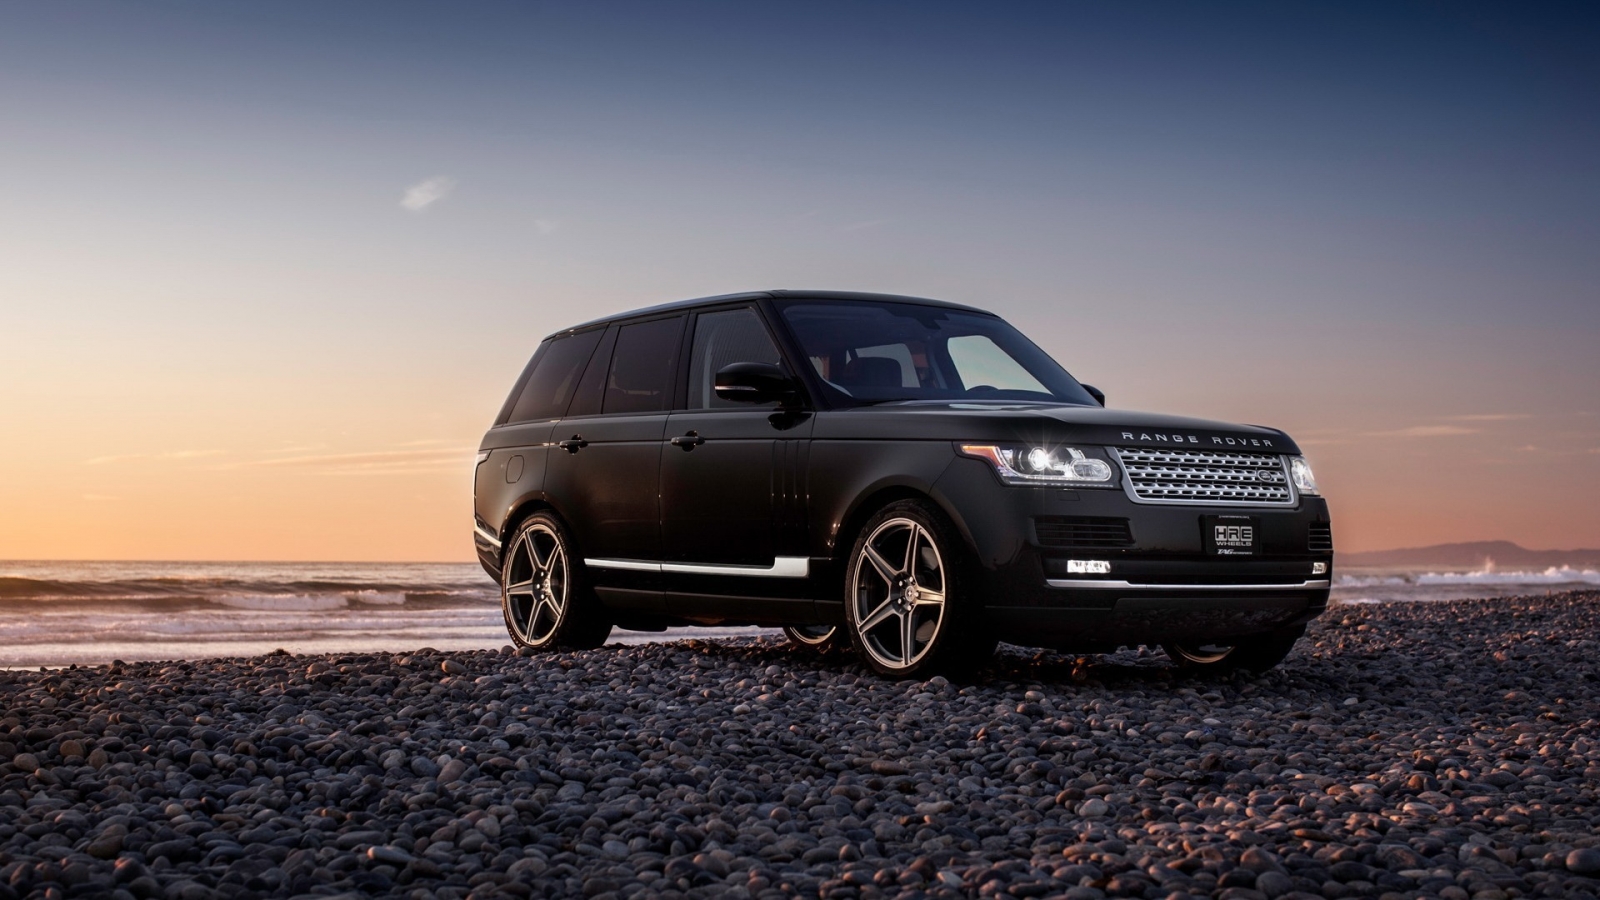 New Black Range Rover for 1600 x 900 HDTV resolution